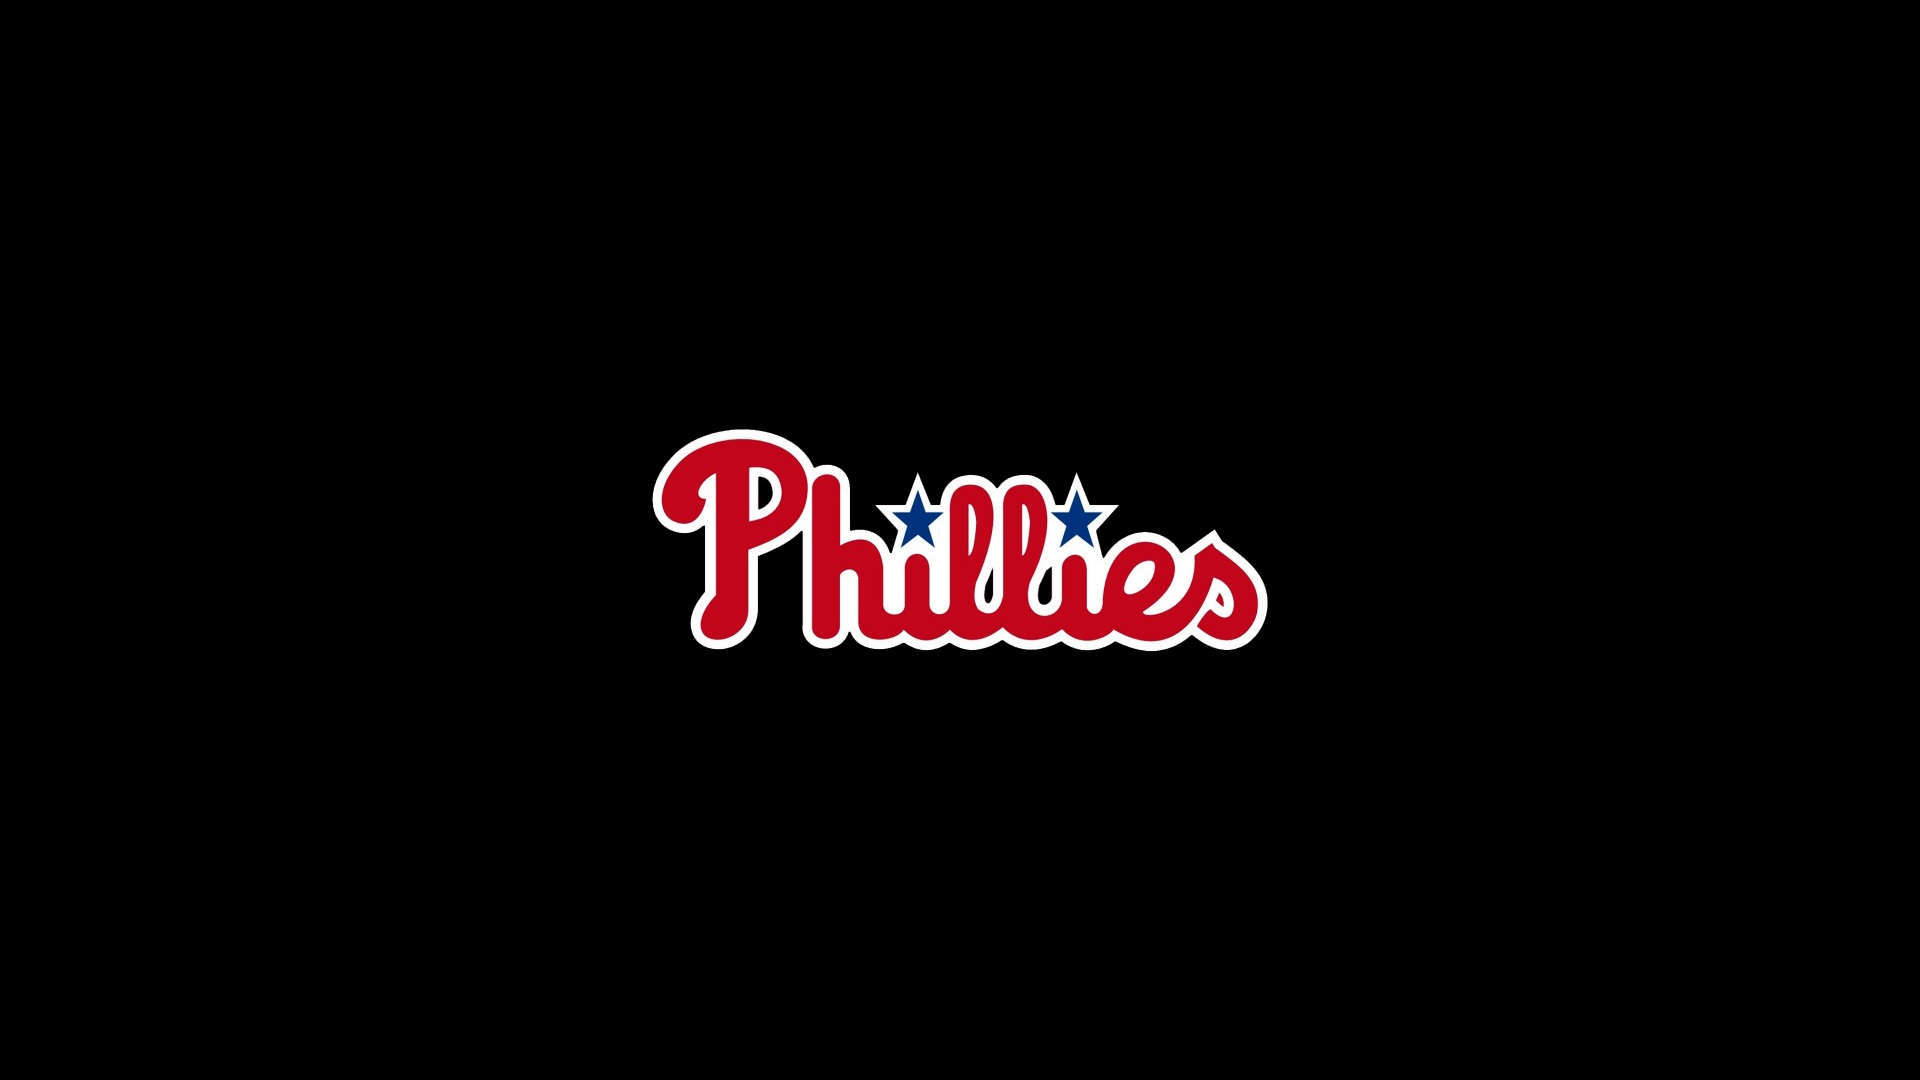 Philadelphia Phillies Wallpaper For Puter